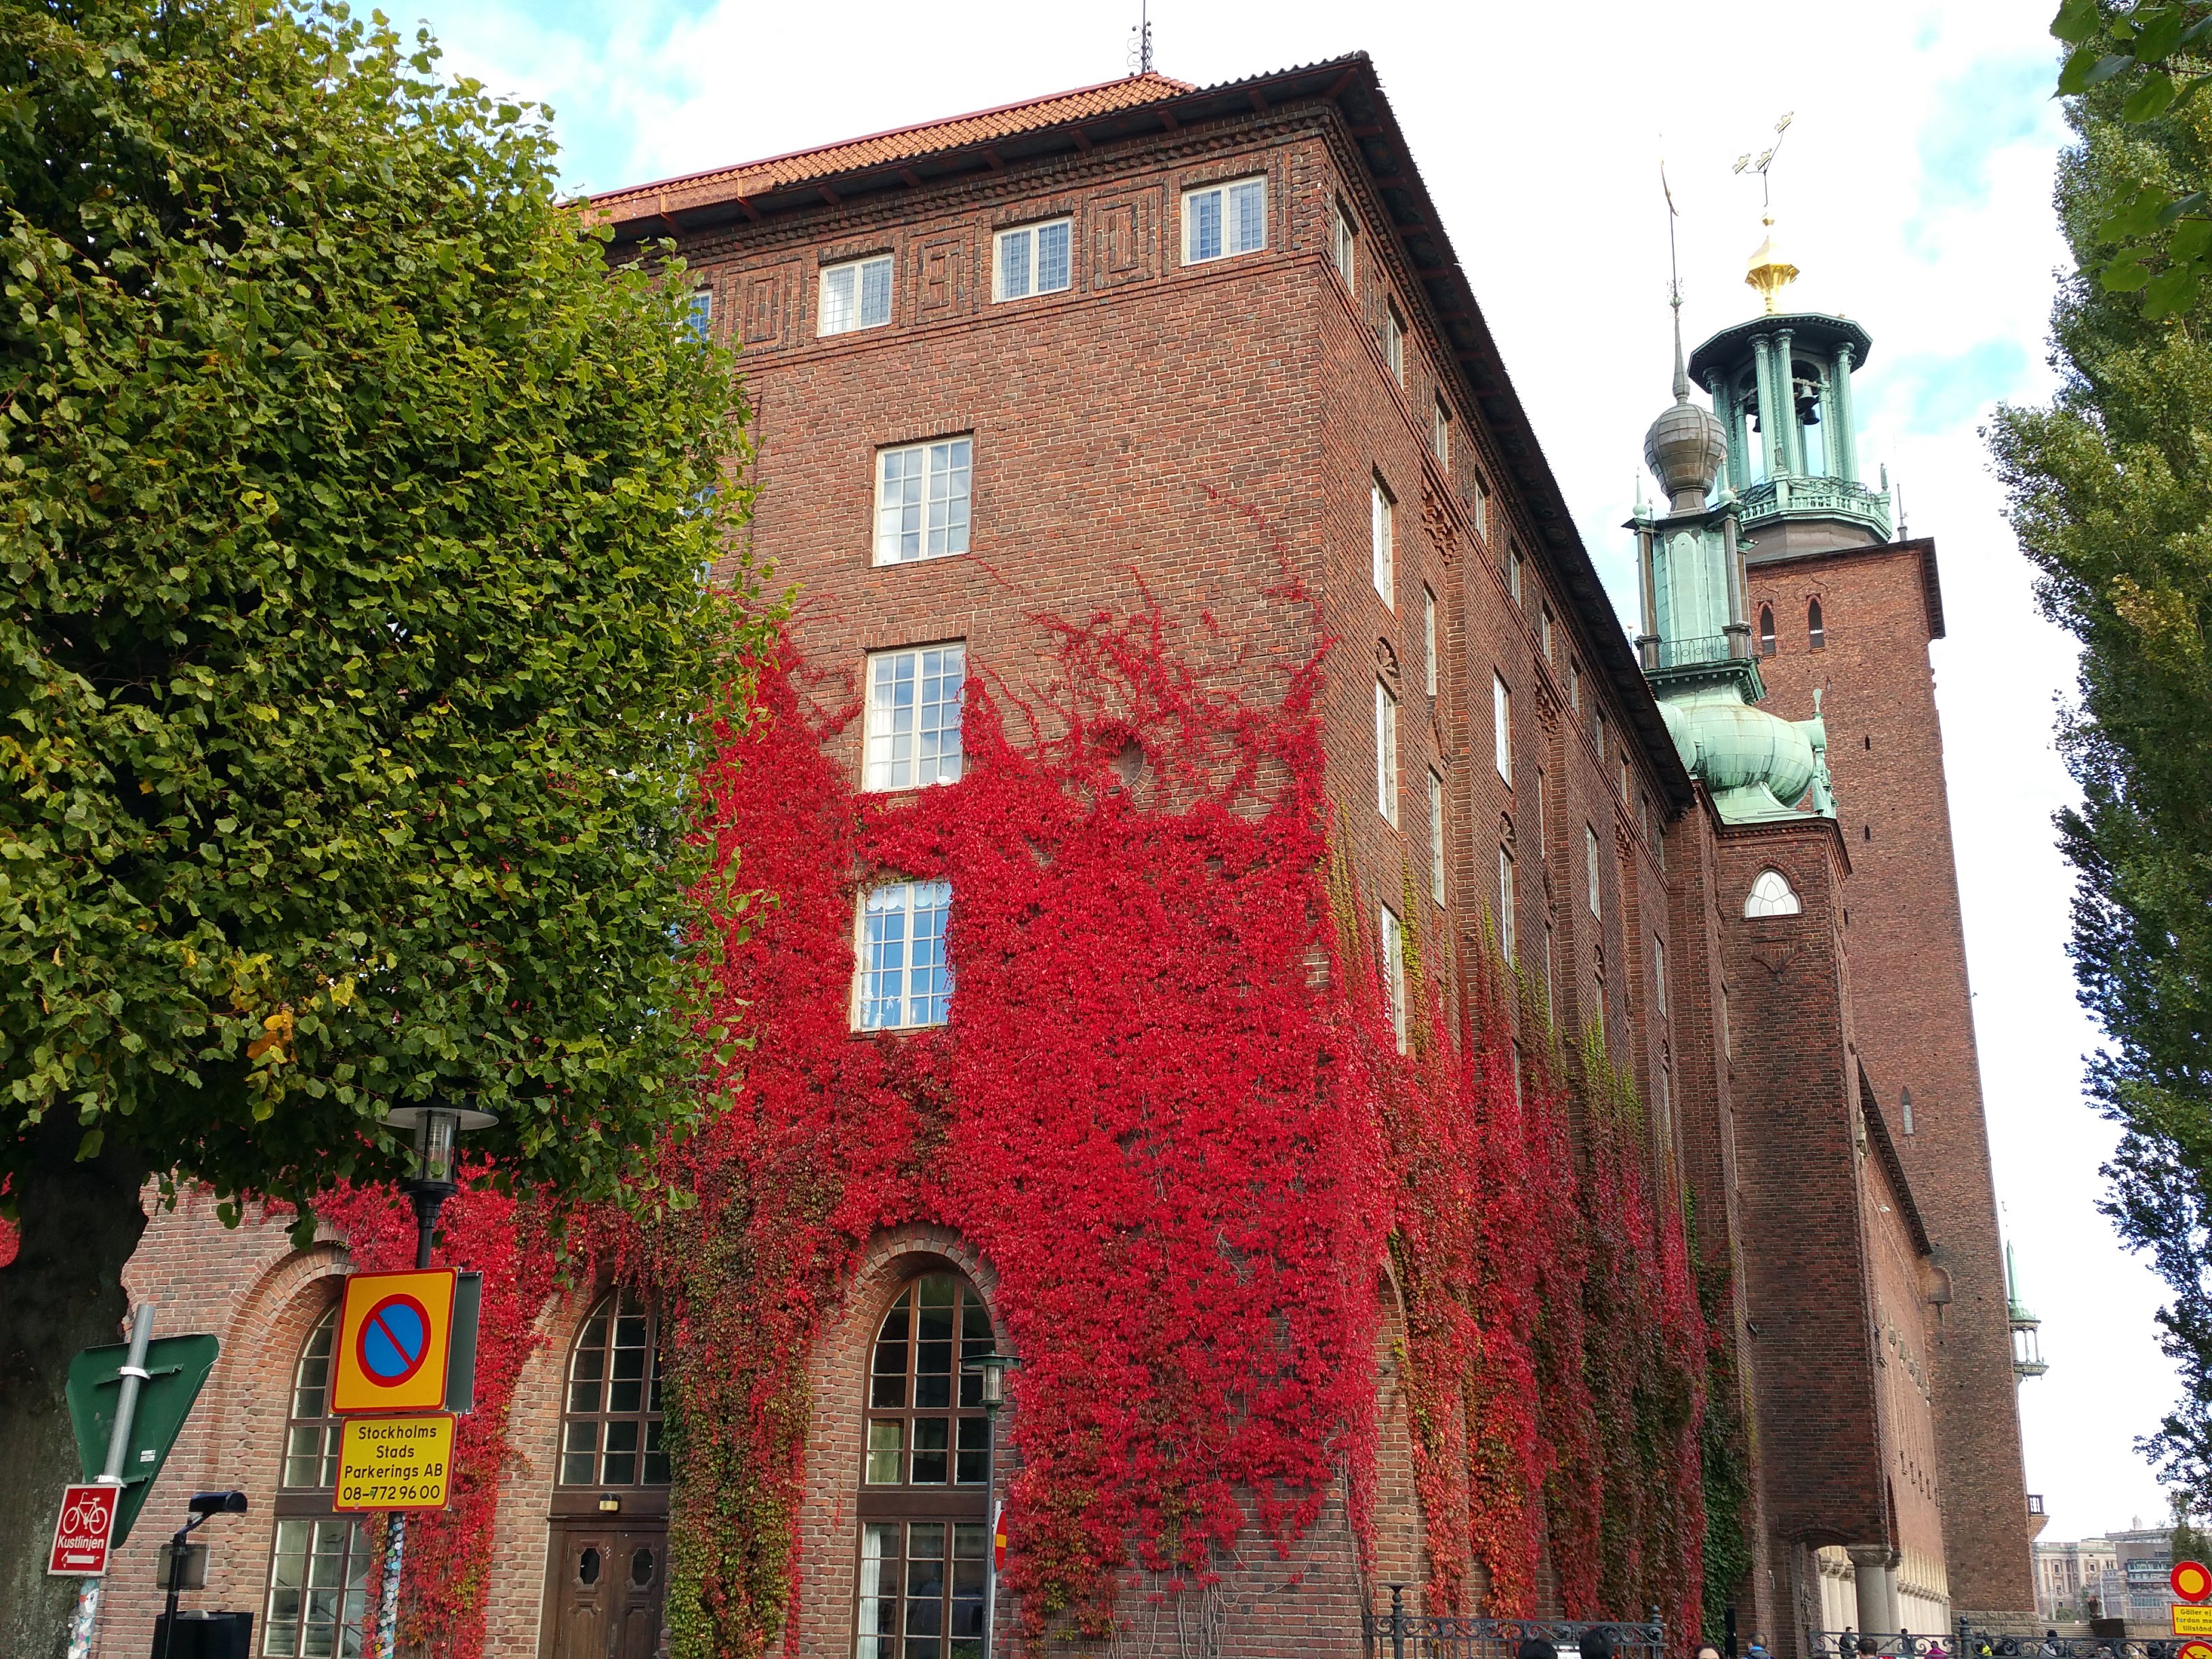 哥尔摩市政厅市中心位于梅拉伦湖畔,始建于1911年,建筑外墙呈砖红色